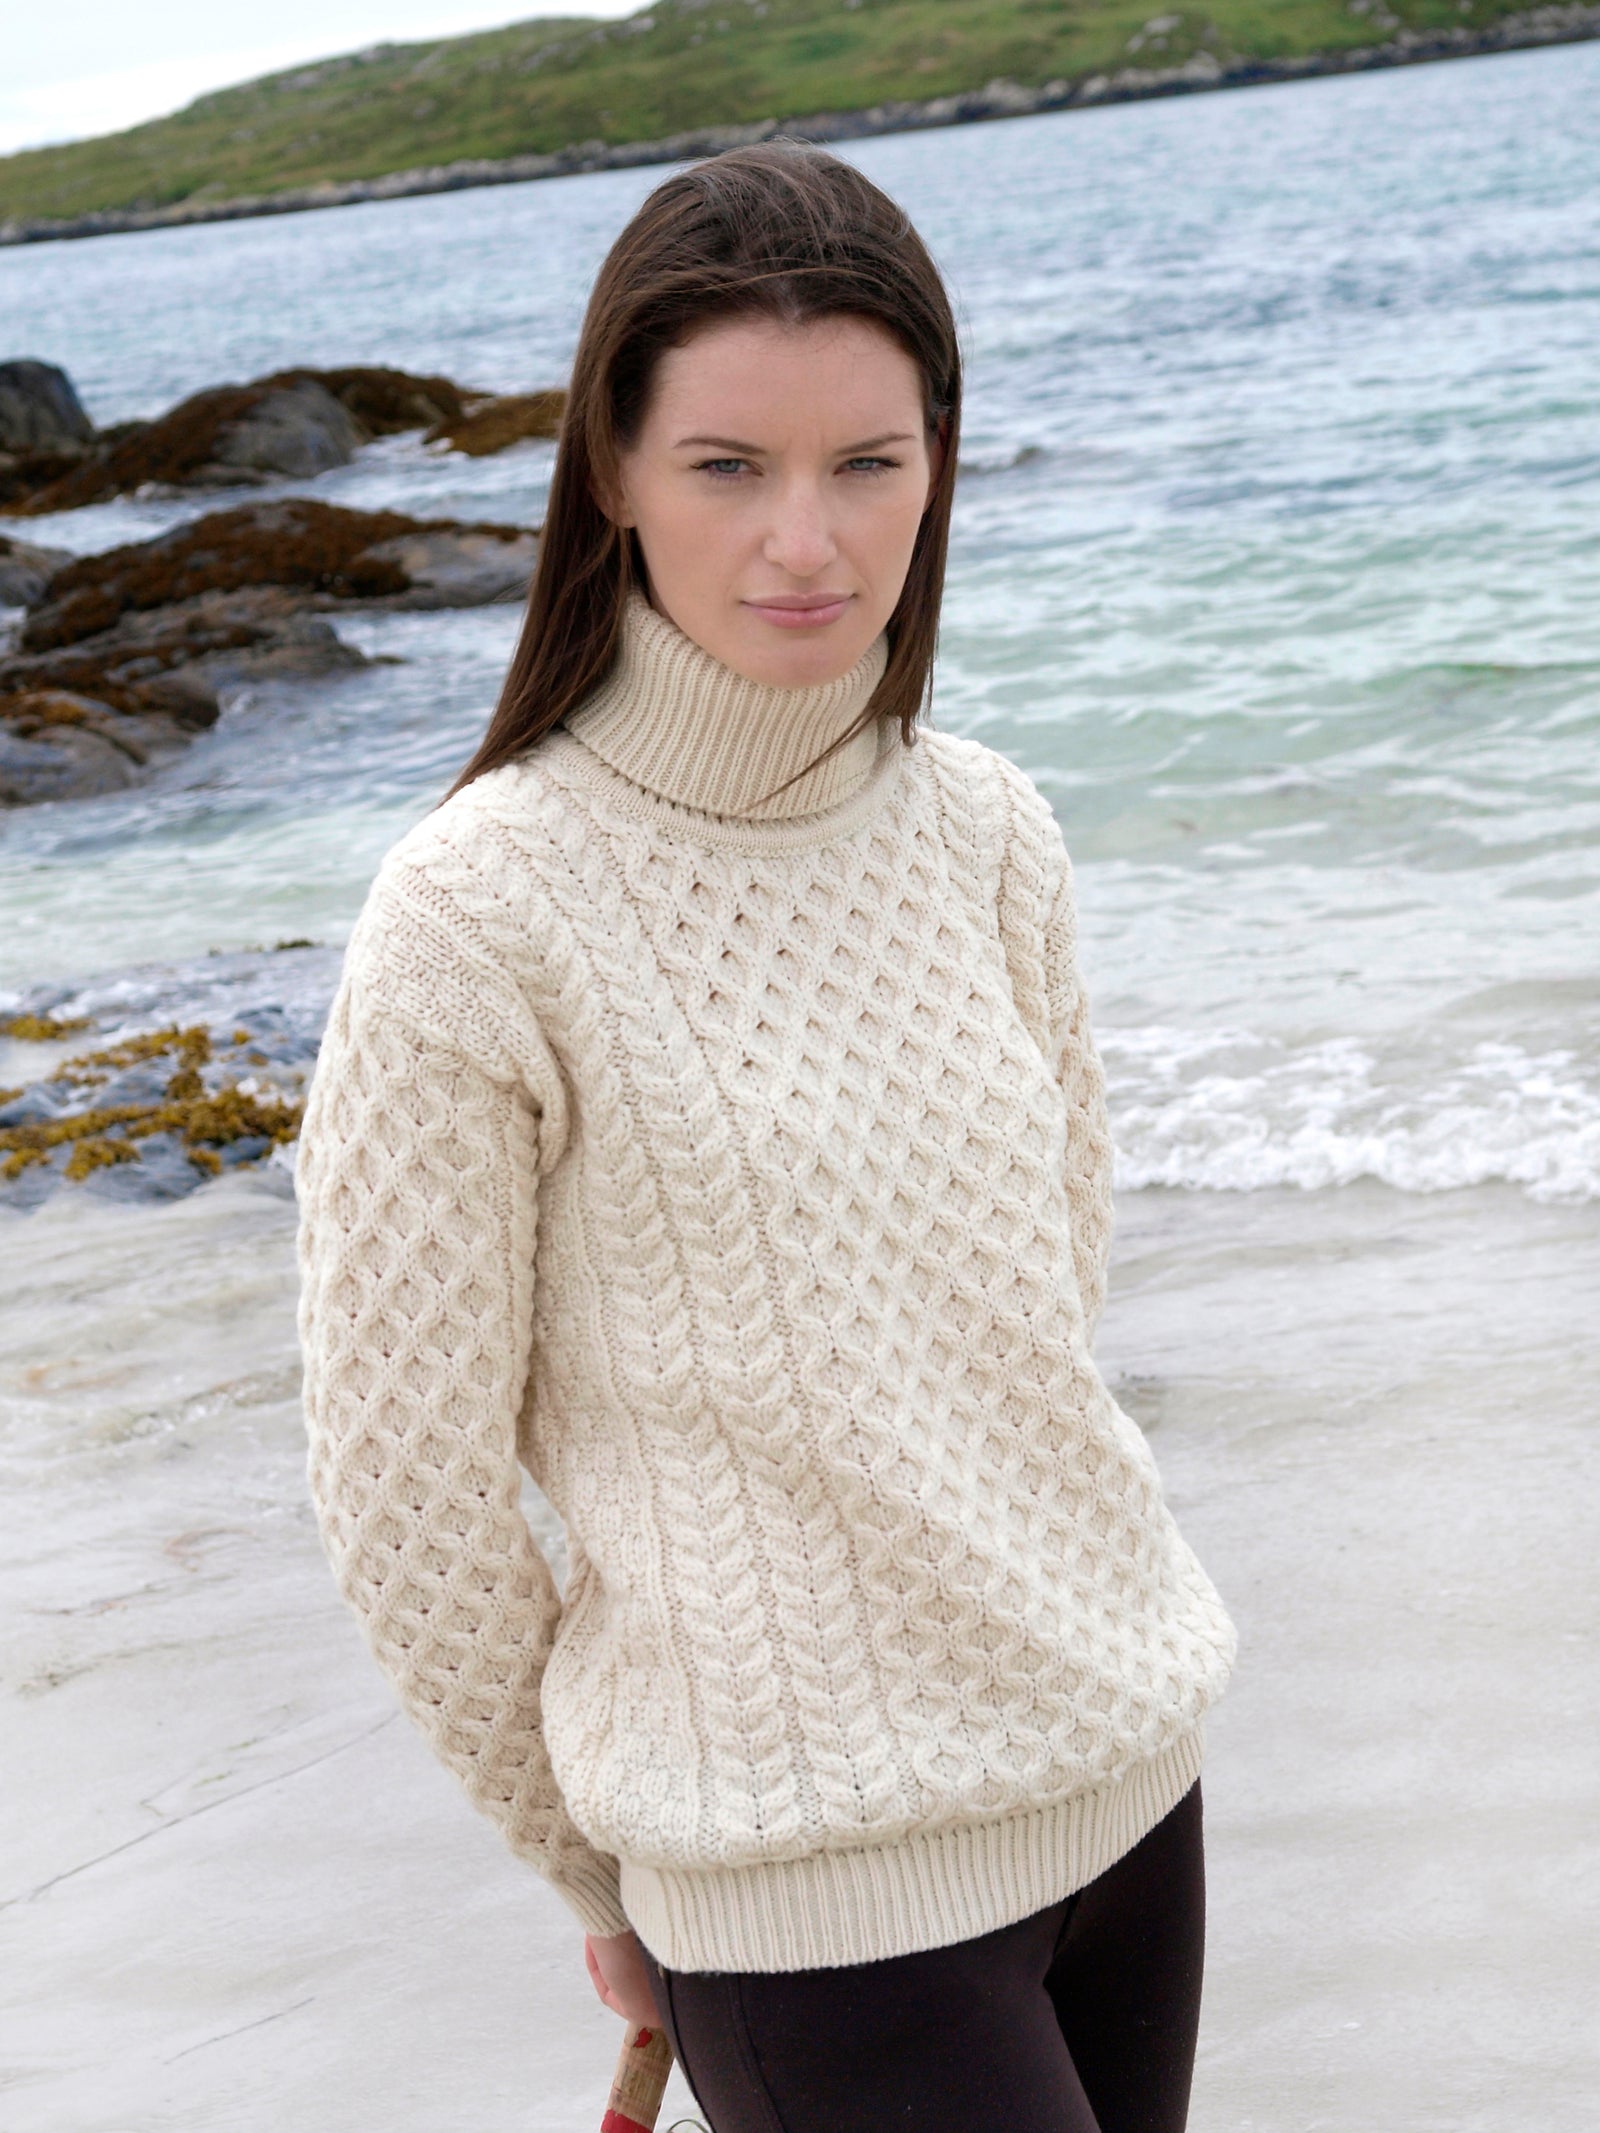 Irish roll neck sweaters, Donegal tweed woollen knitwear for men and women